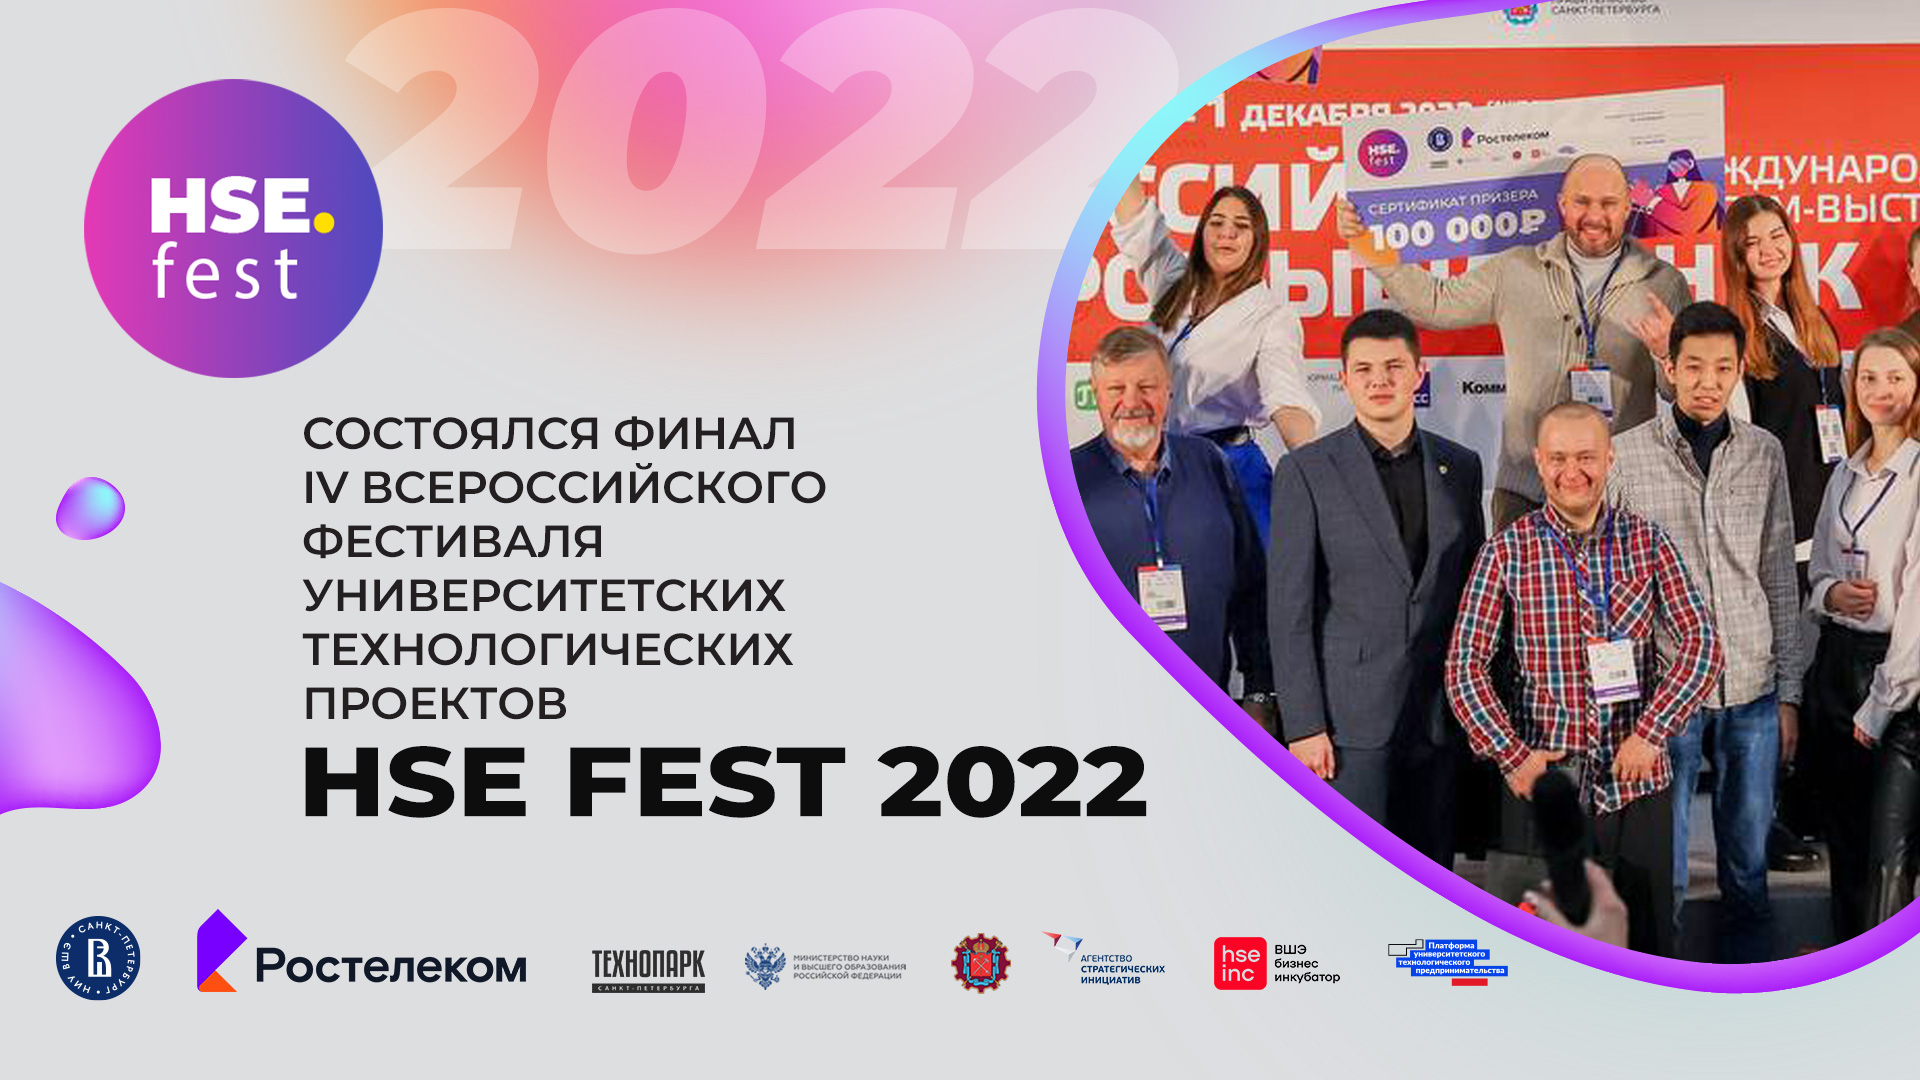  HSE FEST 2022